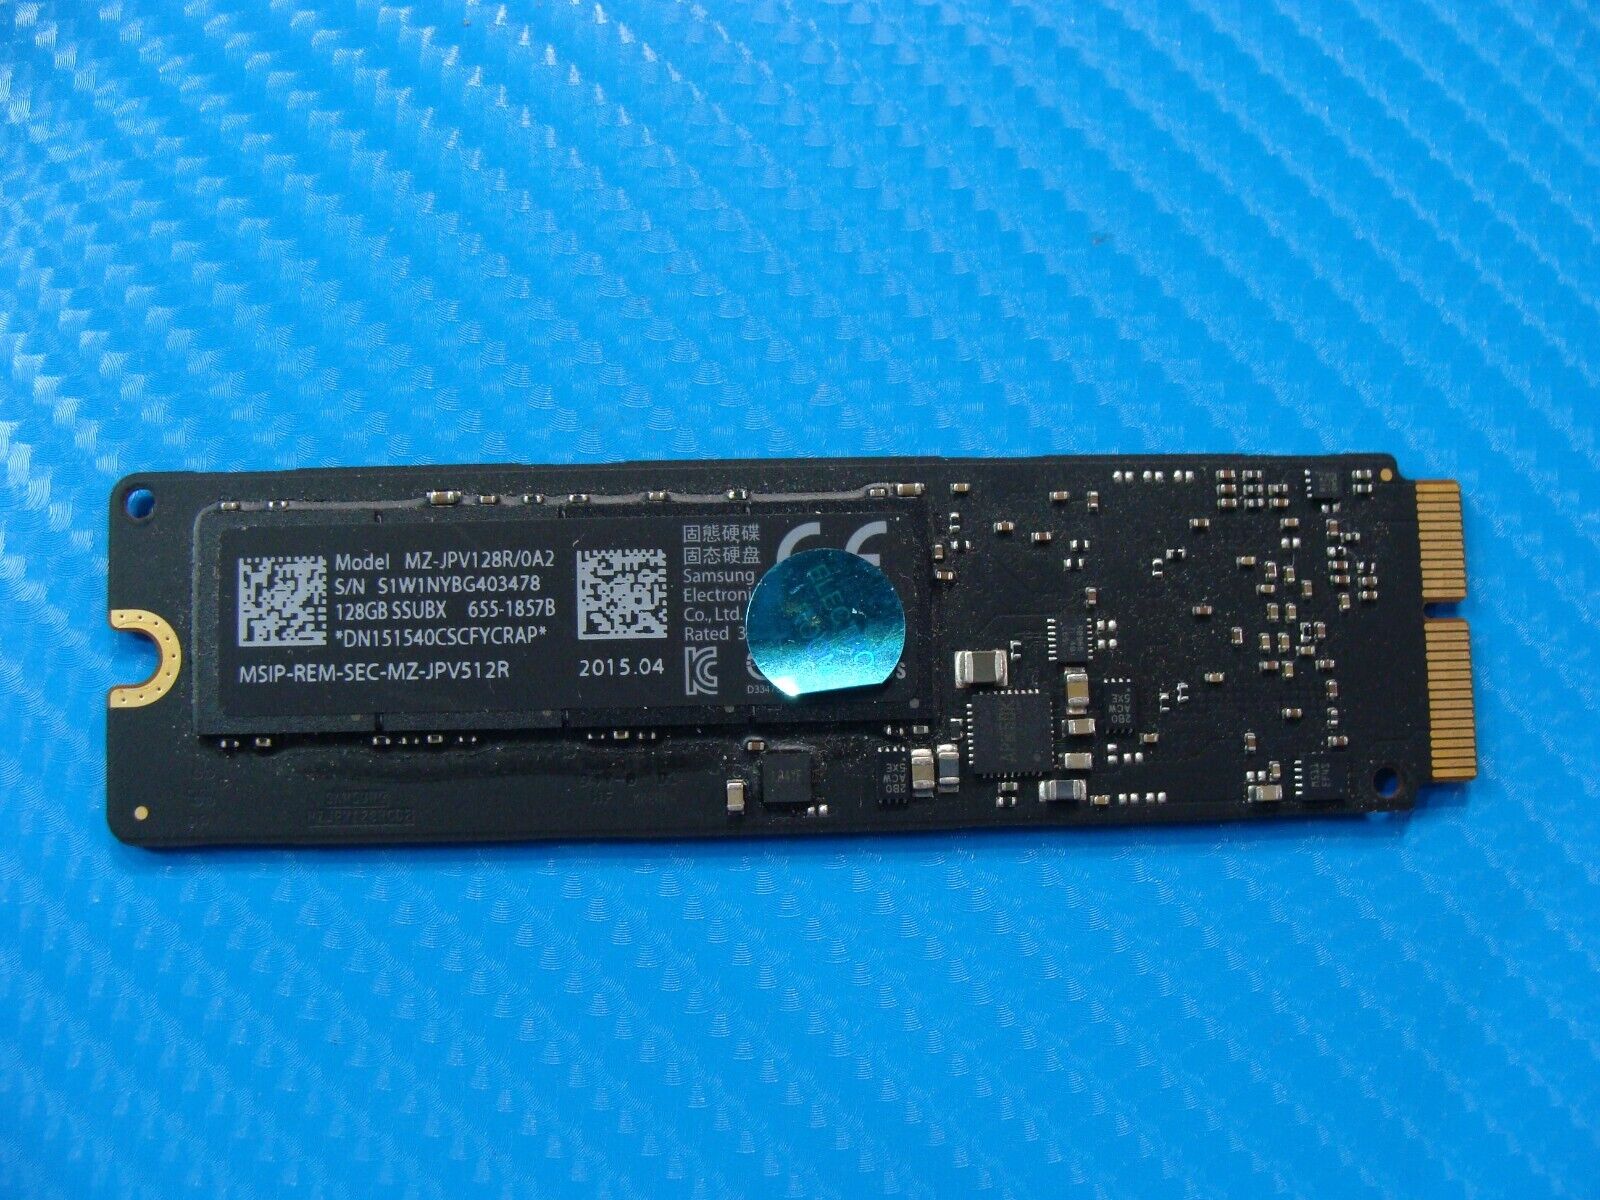 MacBook A1466 Samsung 128GB SSD Solid State Drive MZ-JPV128R/0A2 655-1857B